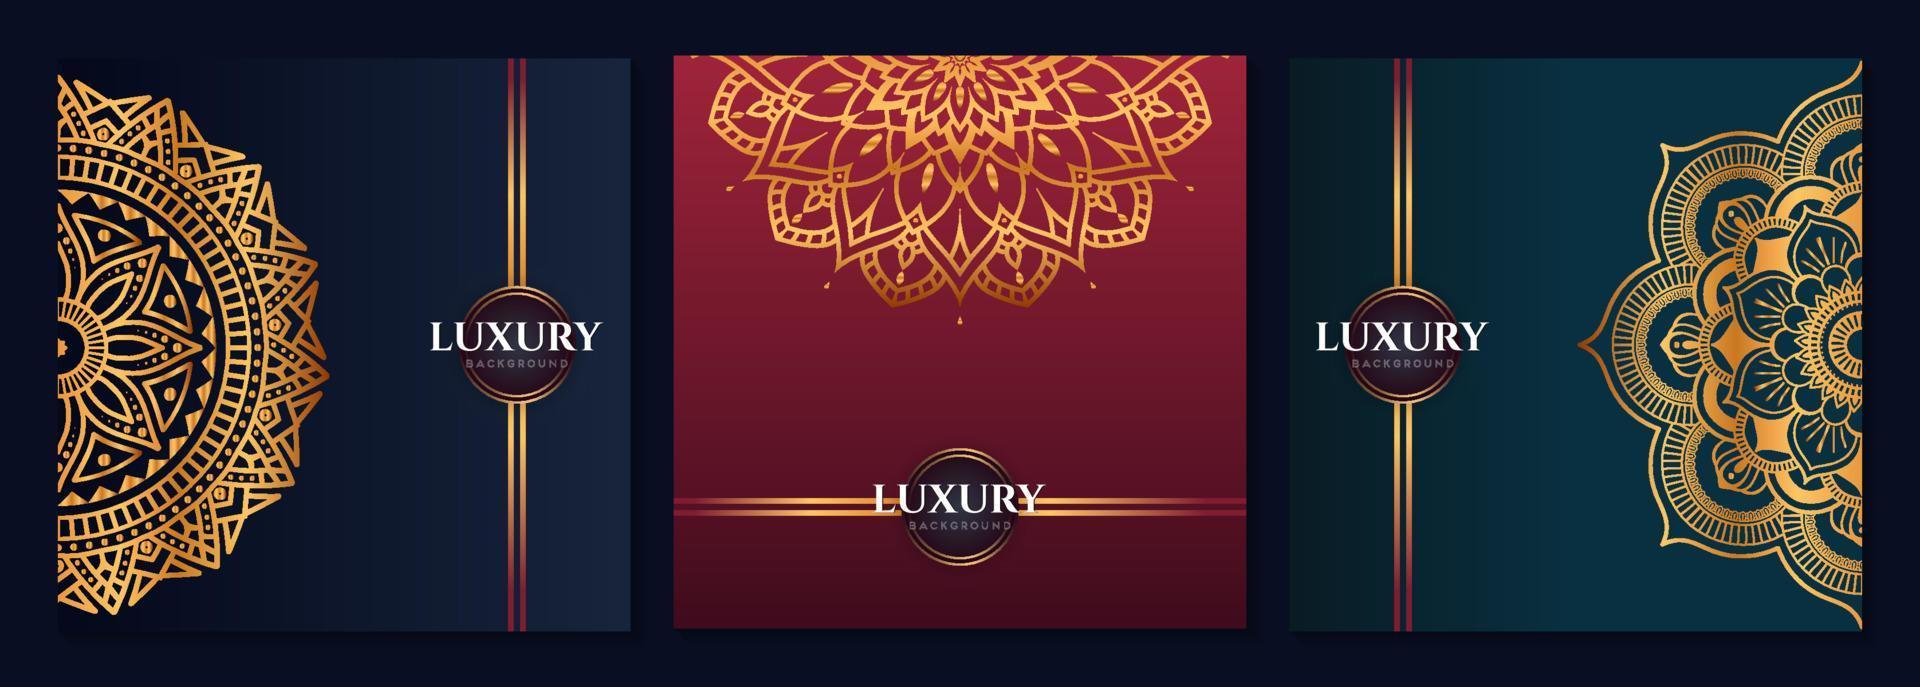 Satz von abstrakten Gold-Luxus-Mandala-Hintergrund-Vektor-Vorlagen, kreisförmige Zier-Arabesken-Muster für Poster, Cover, Broschüre, Flyer. roter, grüner, blauer Hintergrund vektor